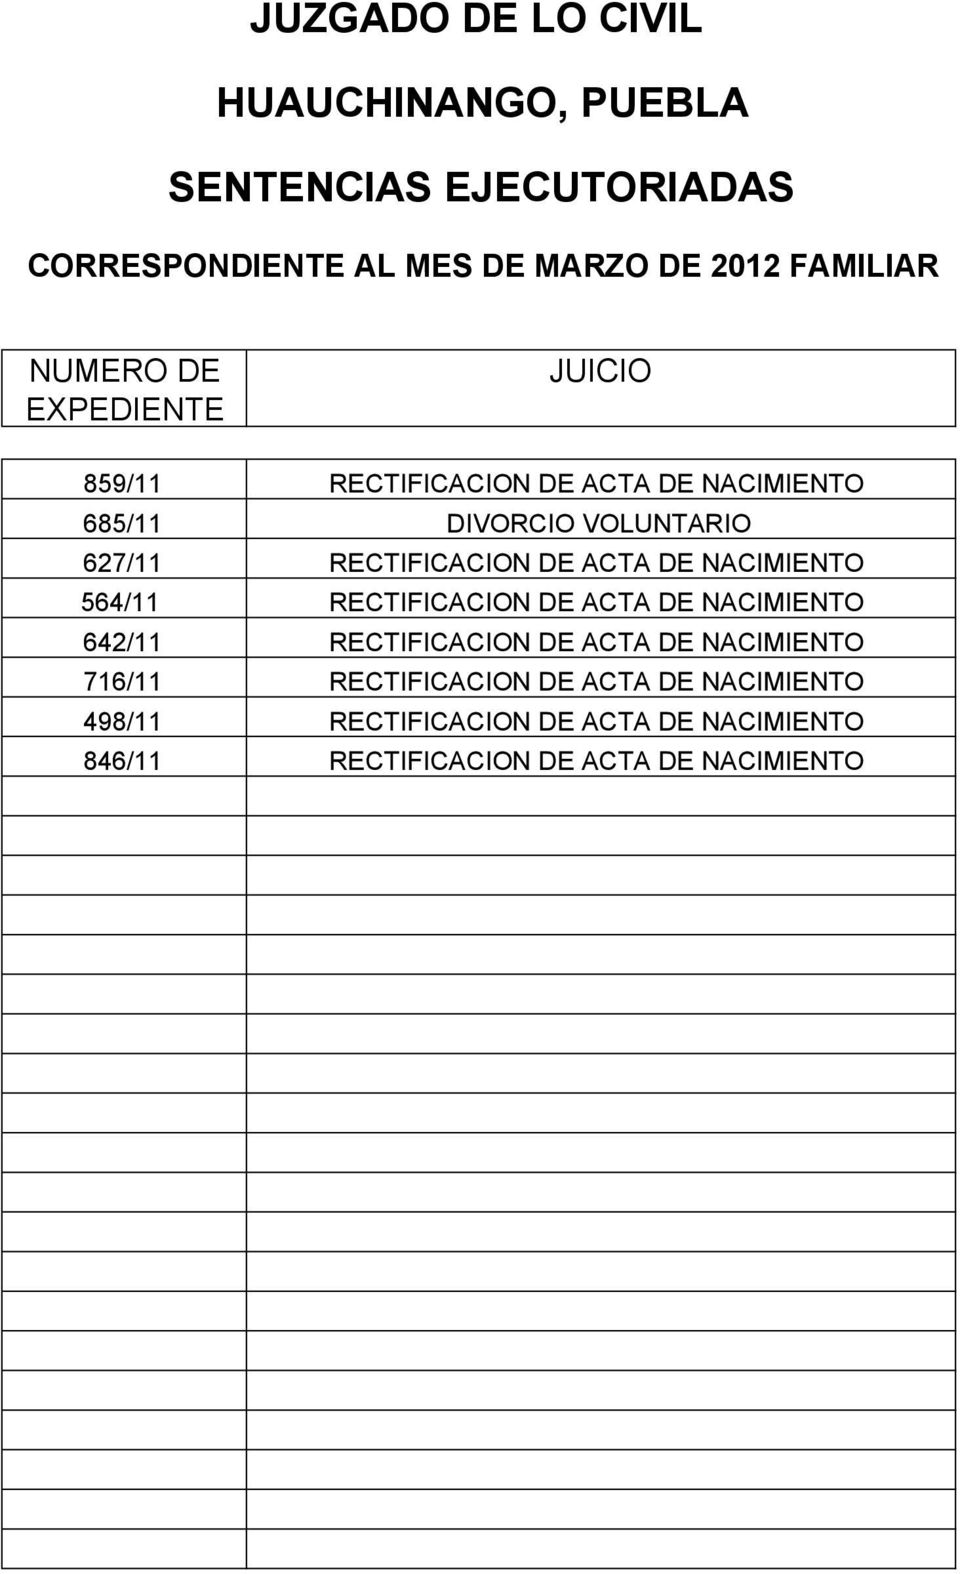 ACTA DE NACIMIENTO 642/11 RECTIFICACION DE ACTA DE NACIMIENTO 716/11 RECTIFICACION DE ACTA DE